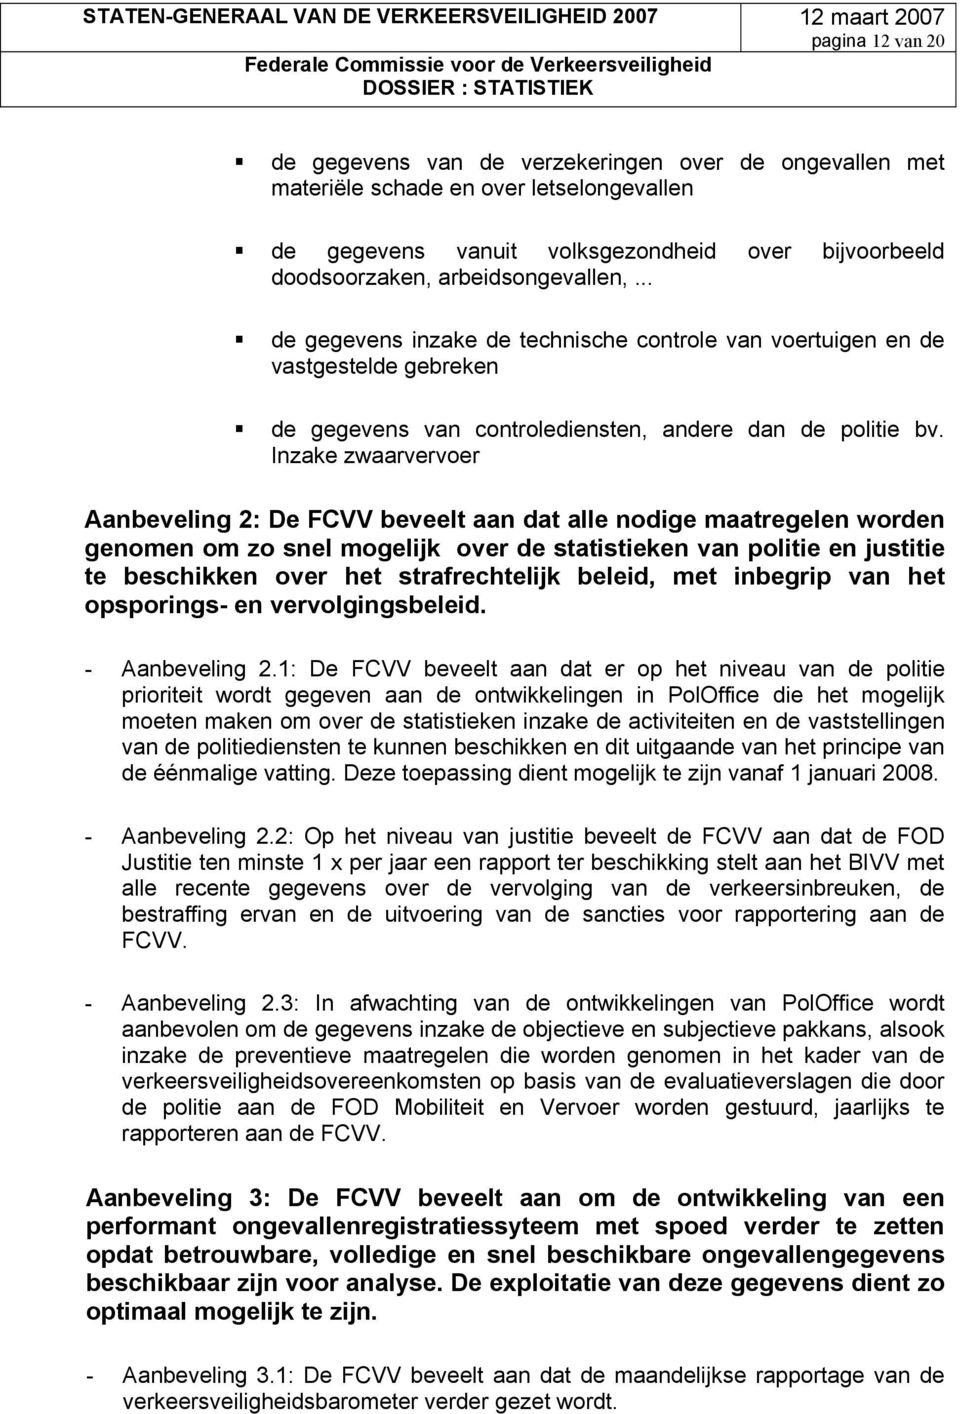 Inzake zwaarvervoer Aanbeveling 2: De FCVV beveelt aan dat alle nodige maatregelen worden genomen om zo snel mogelijk over de statistieken van politie en justitie te beschikken over het